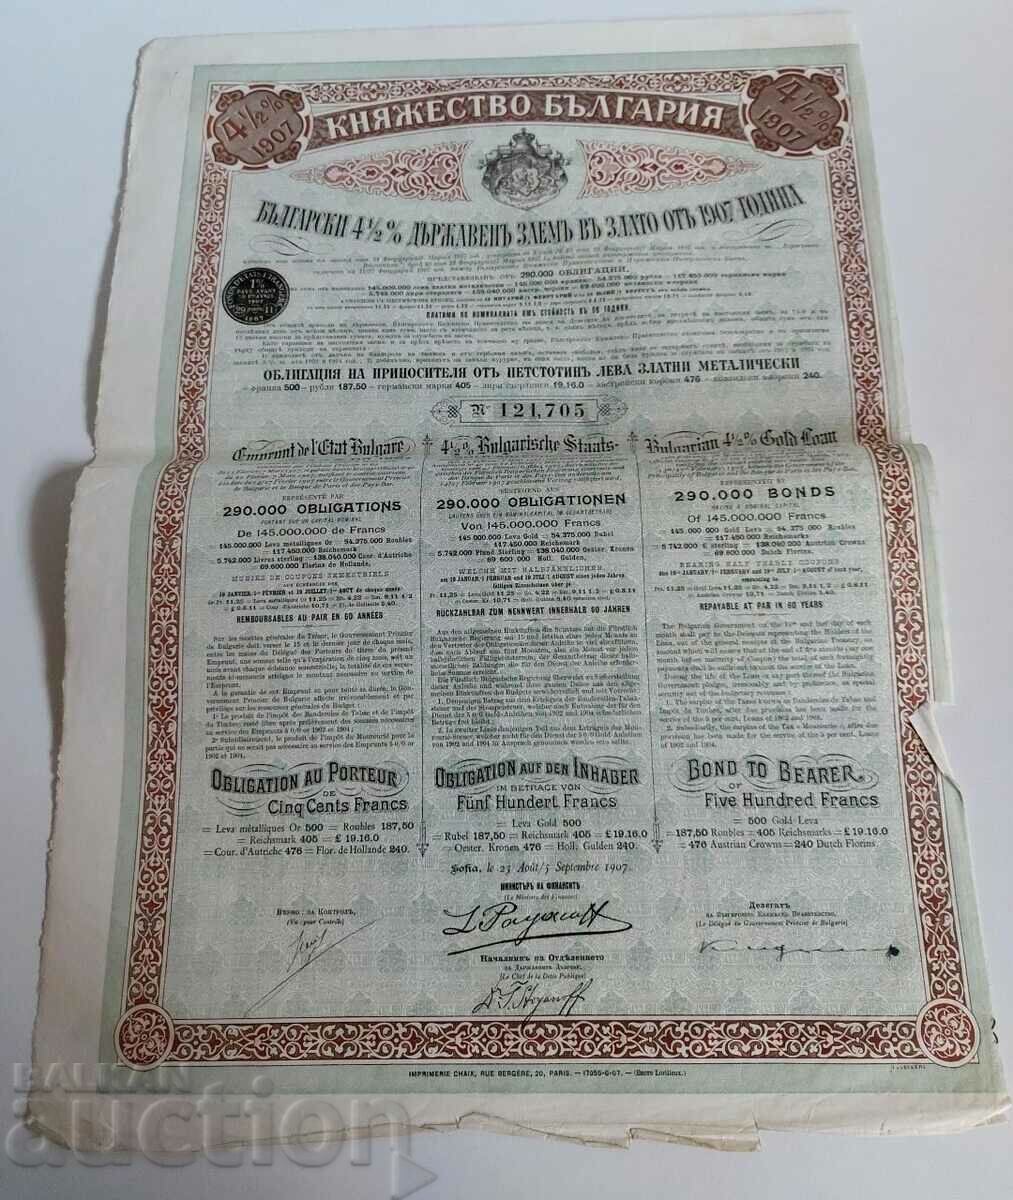 1907 IMPRUMUTUL DE STAT ÎN OBLIGAȚIONARE DE AUR ACȚIONARE PRINCIPITATEA BULGARIA